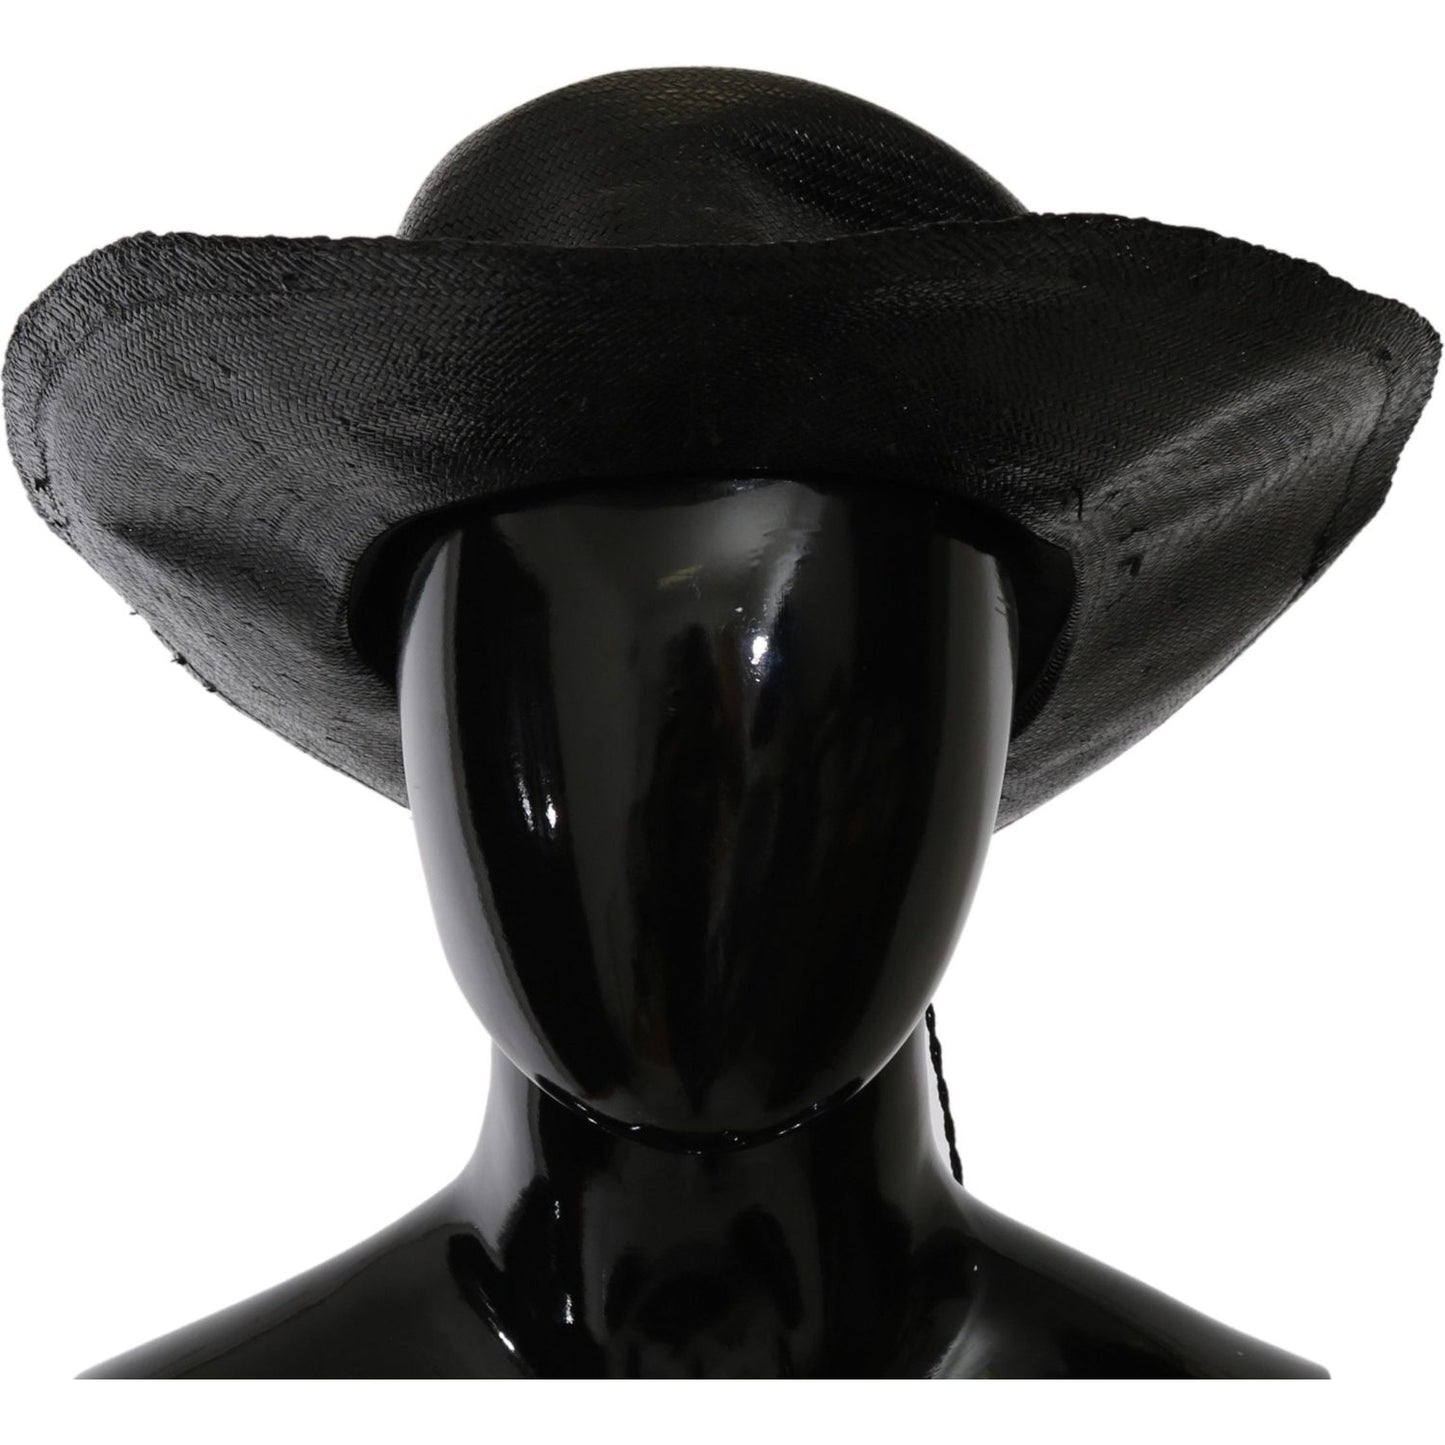 Costume National Chic Black Floppy Hat - Timeless Elegance Hat black-wide-brim-cowboy-solid-hat IMG_0919-c5f0d5d2-97c.jpg